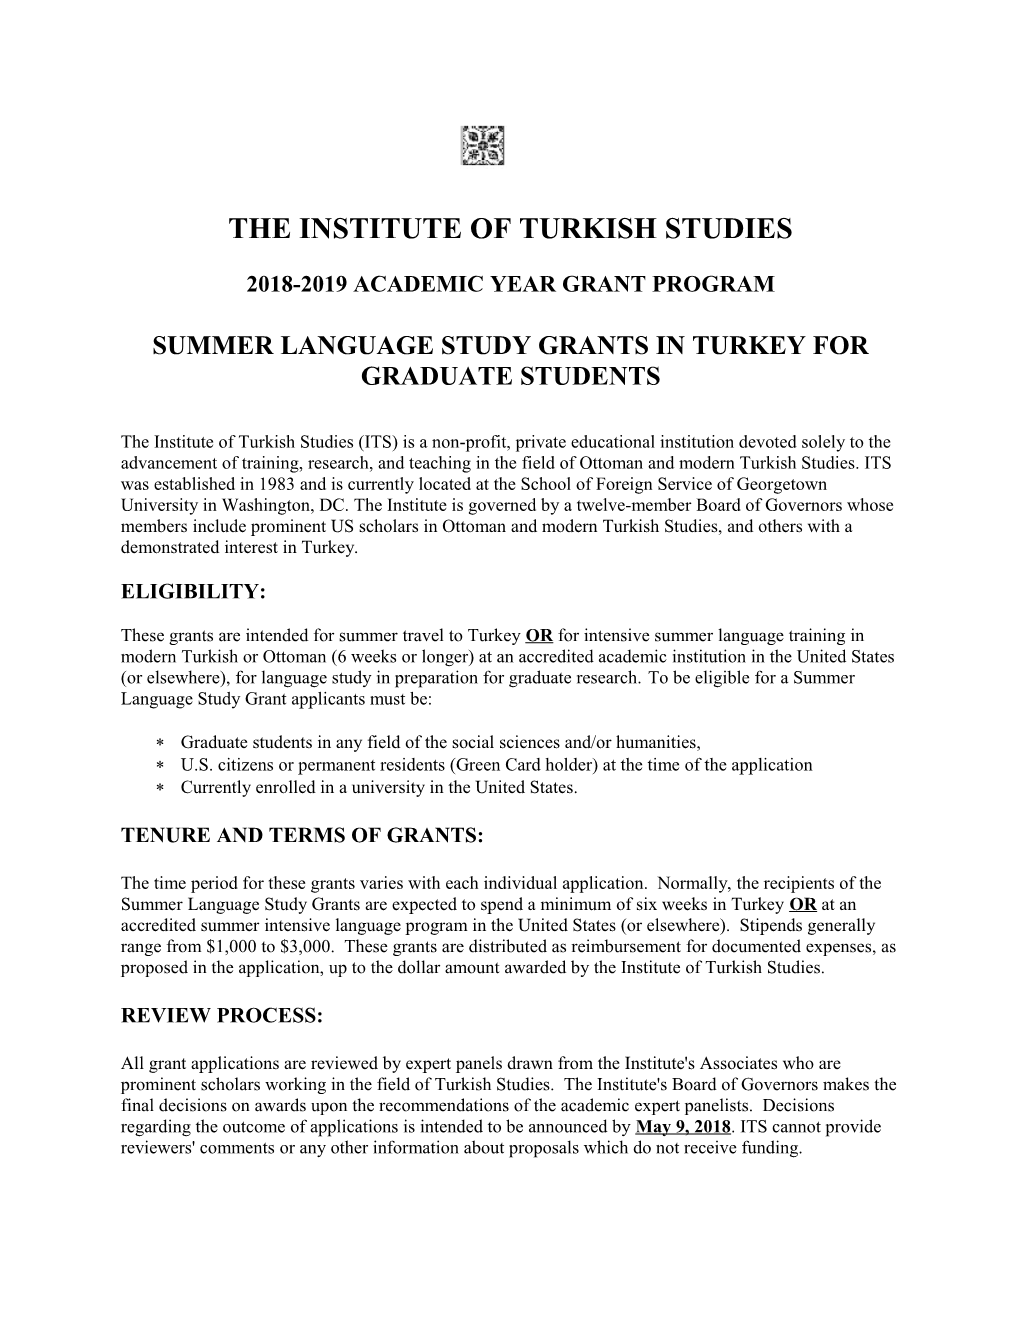 The Institute of Turkish Studies